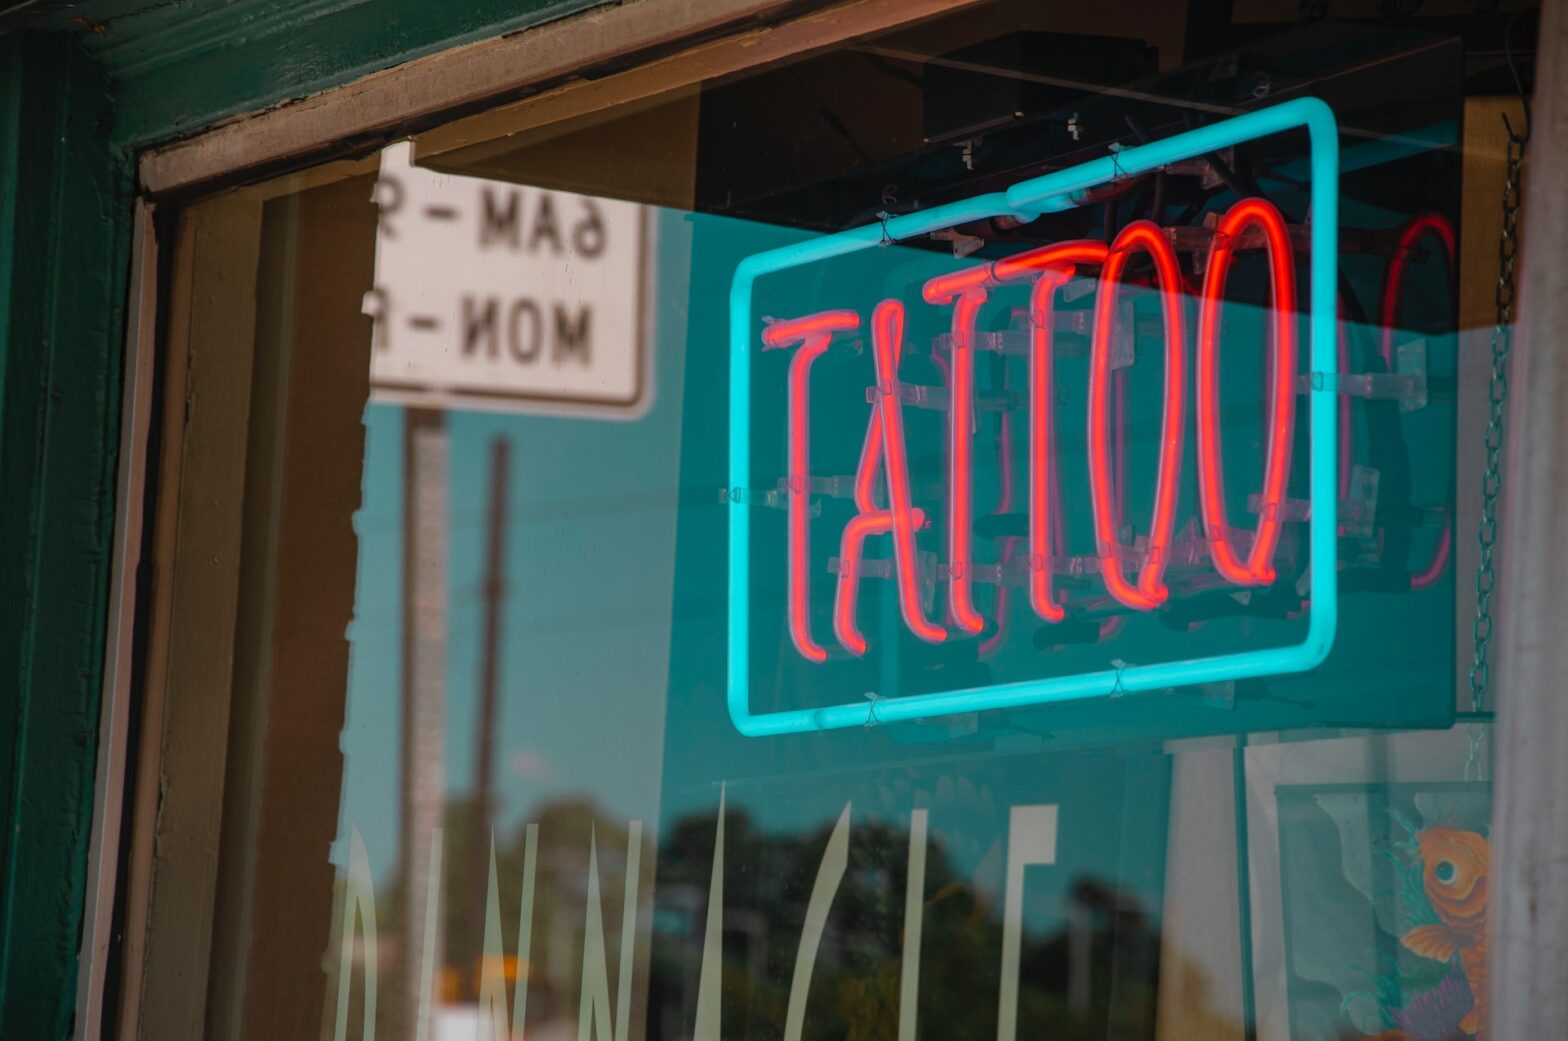 Tattooentfernung: Sind Laser der richtige Weg?